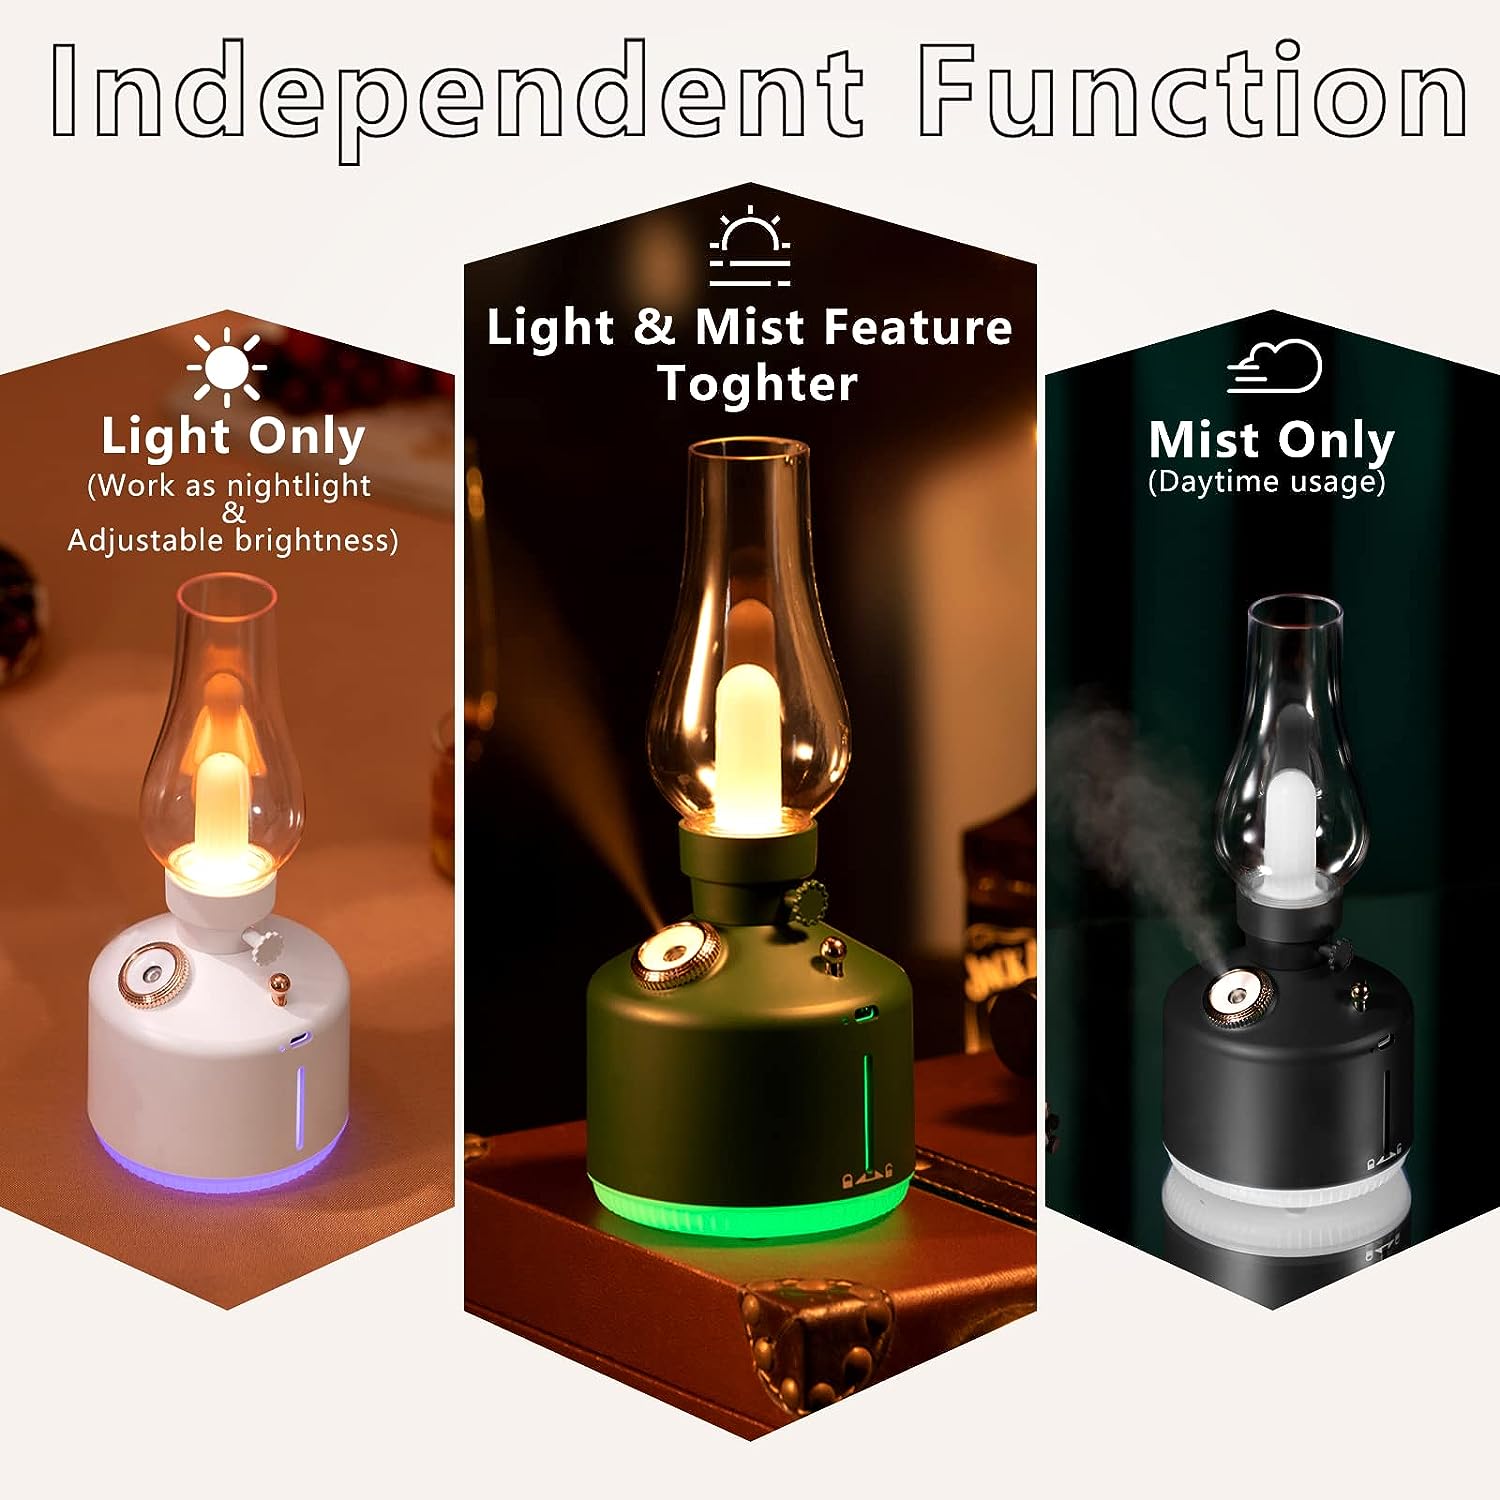 Đèn xông tinh dầu không dây tạo độ ẩm không khí kiêm đèn ngủ để bàn hiệu HOTCASE Vintage Lamp Humidifier Sức chứa 260ml, 8h giữ ẩm, tự ngắt khi hết nước, thiết kế dạng đèn Vintage sang trọng - hàng nhập khẩu